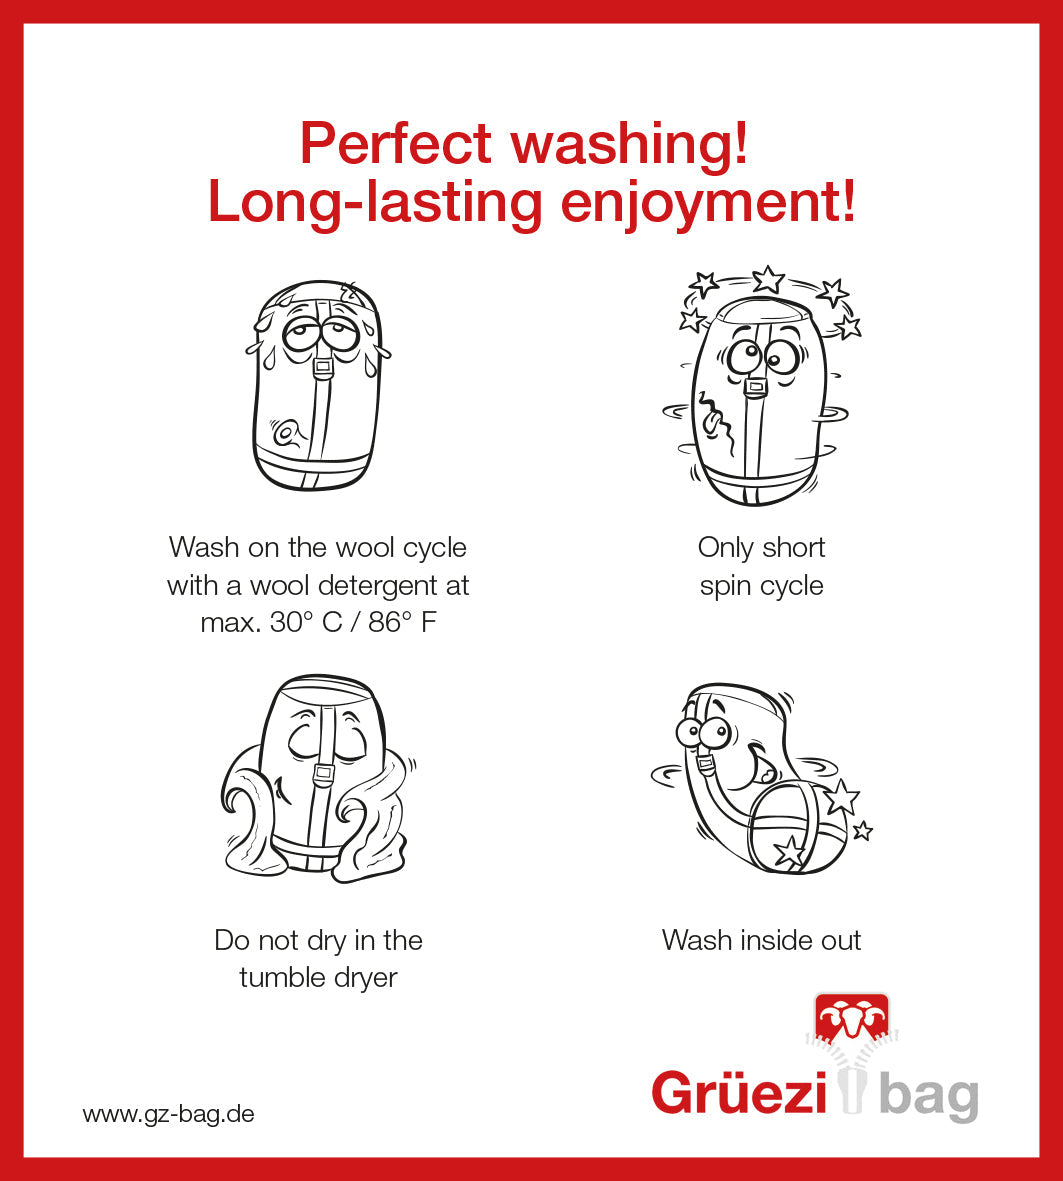 Grüezi bag Wollschlafsack Biopod Wolle Survival - Washing instructions english